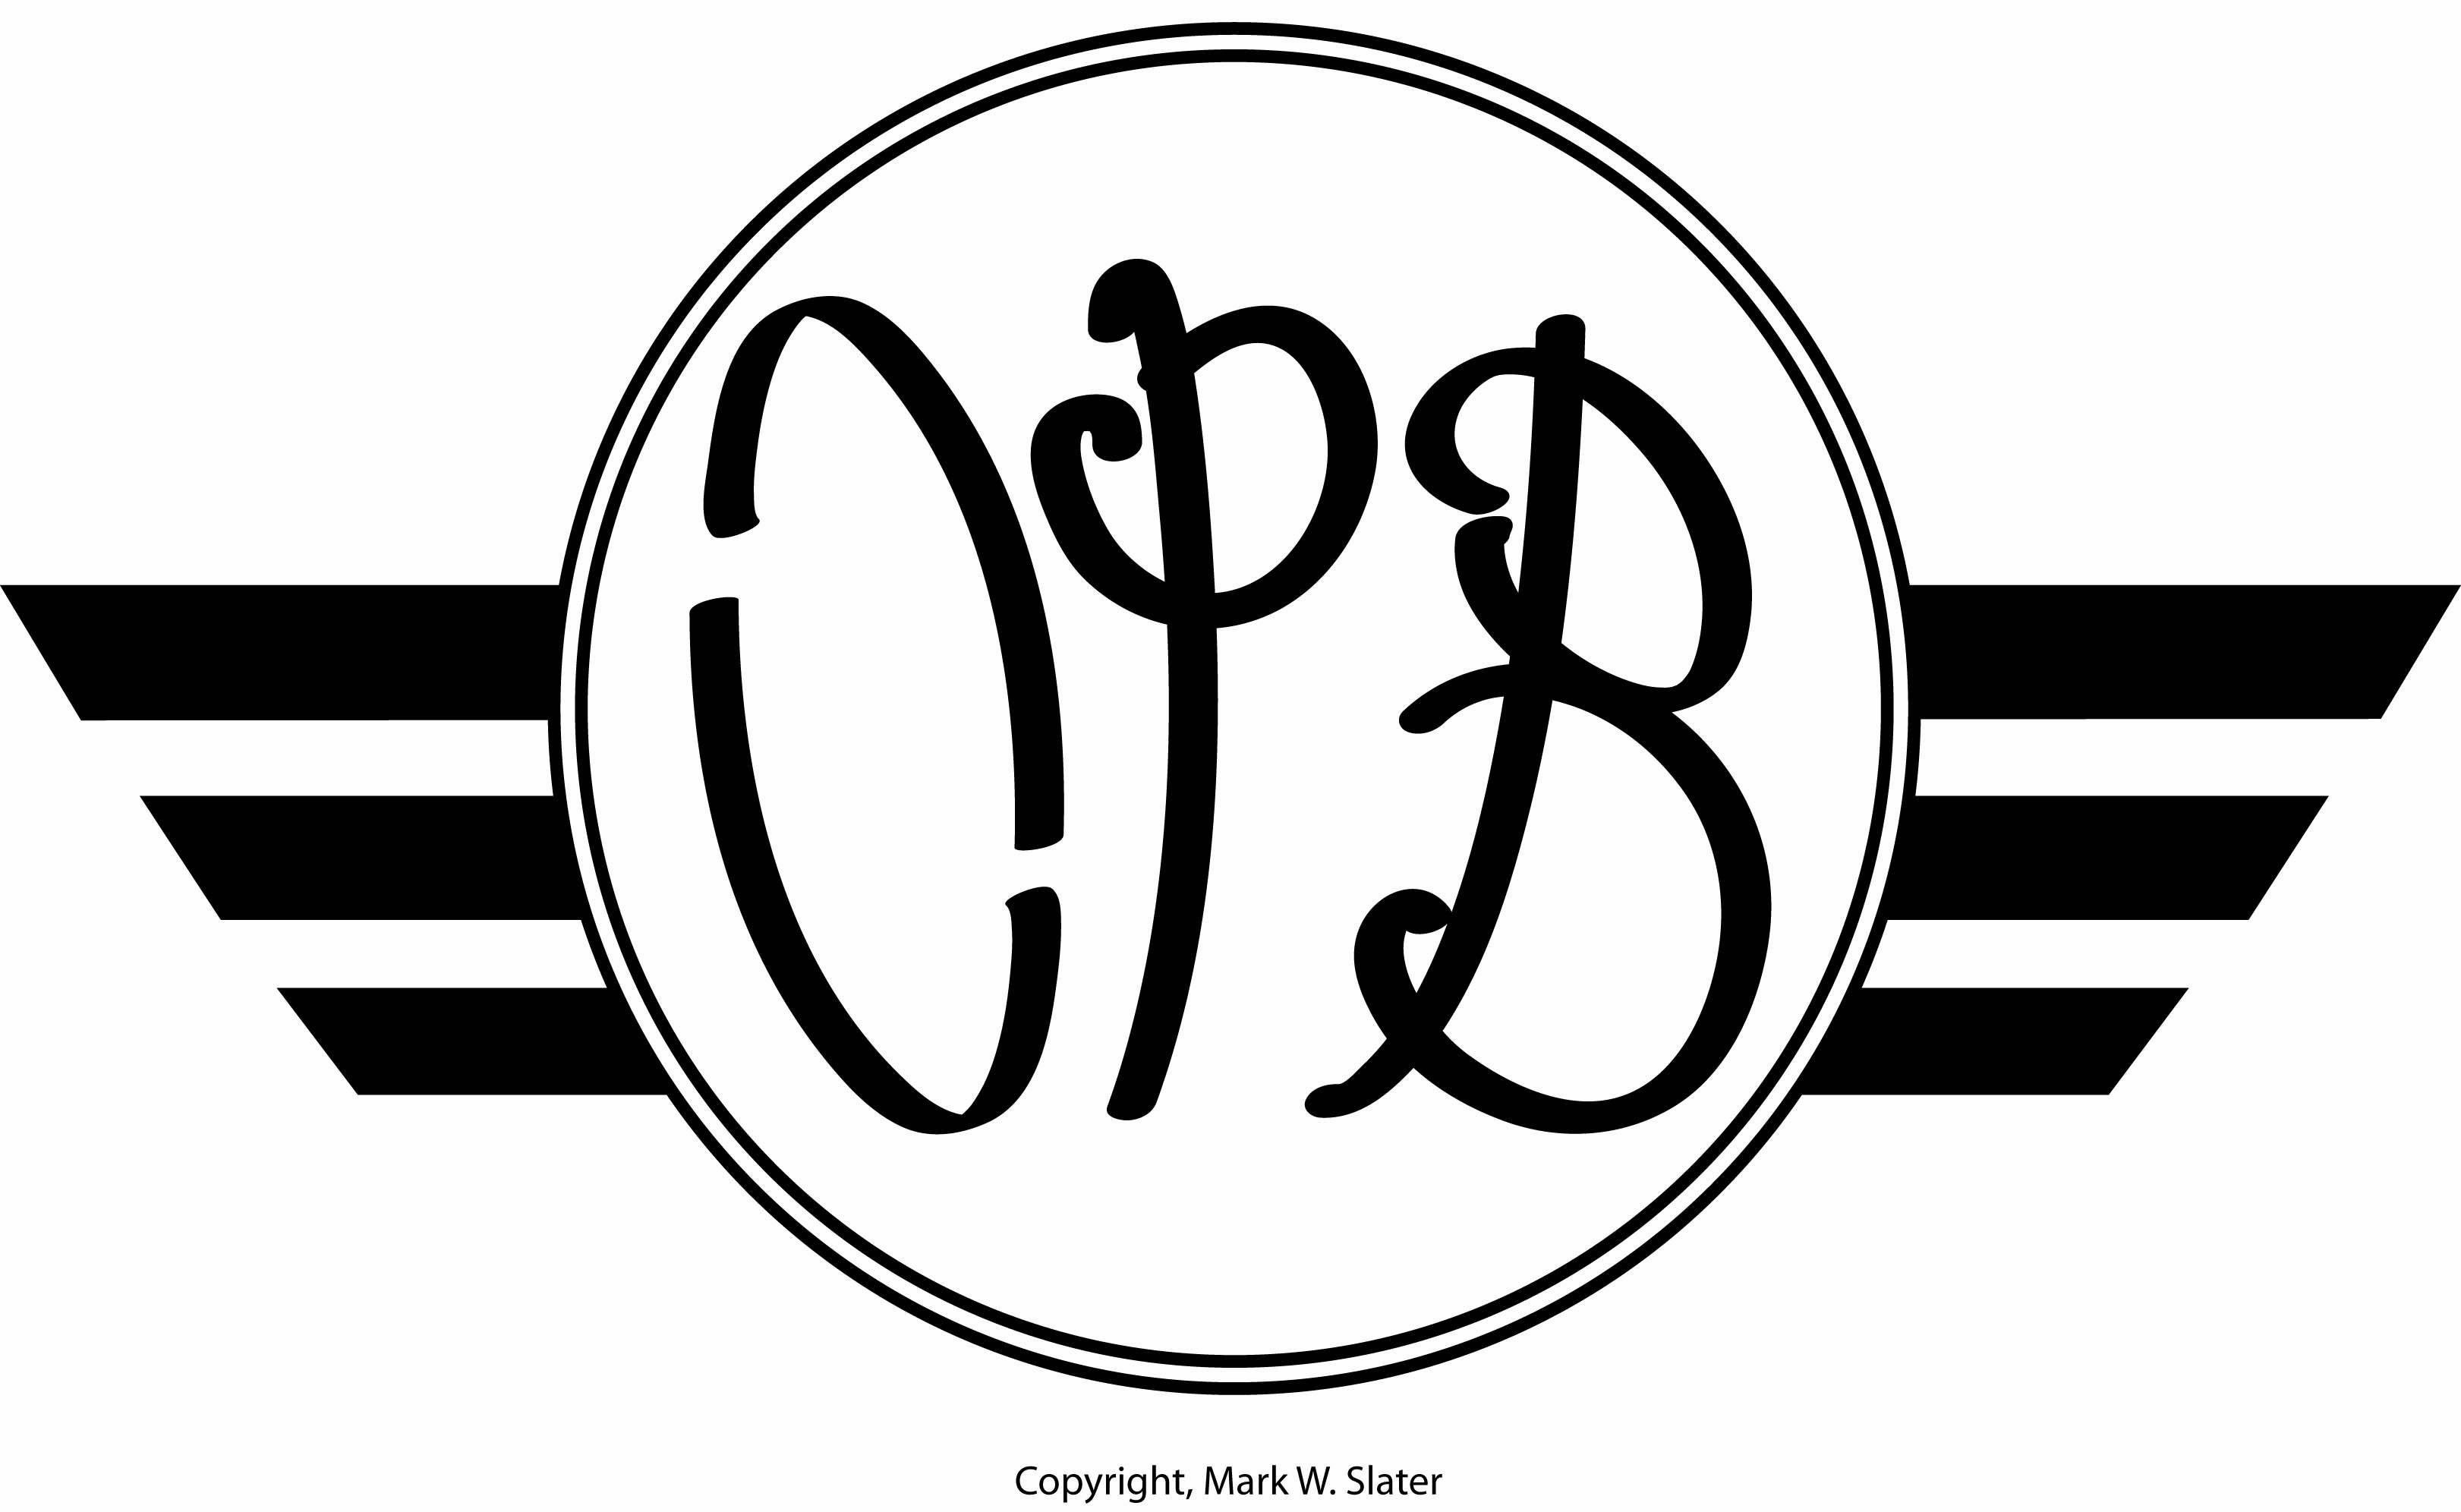 OPB Logo - OPB; Artisanal craft brewing | Natural Line Studio